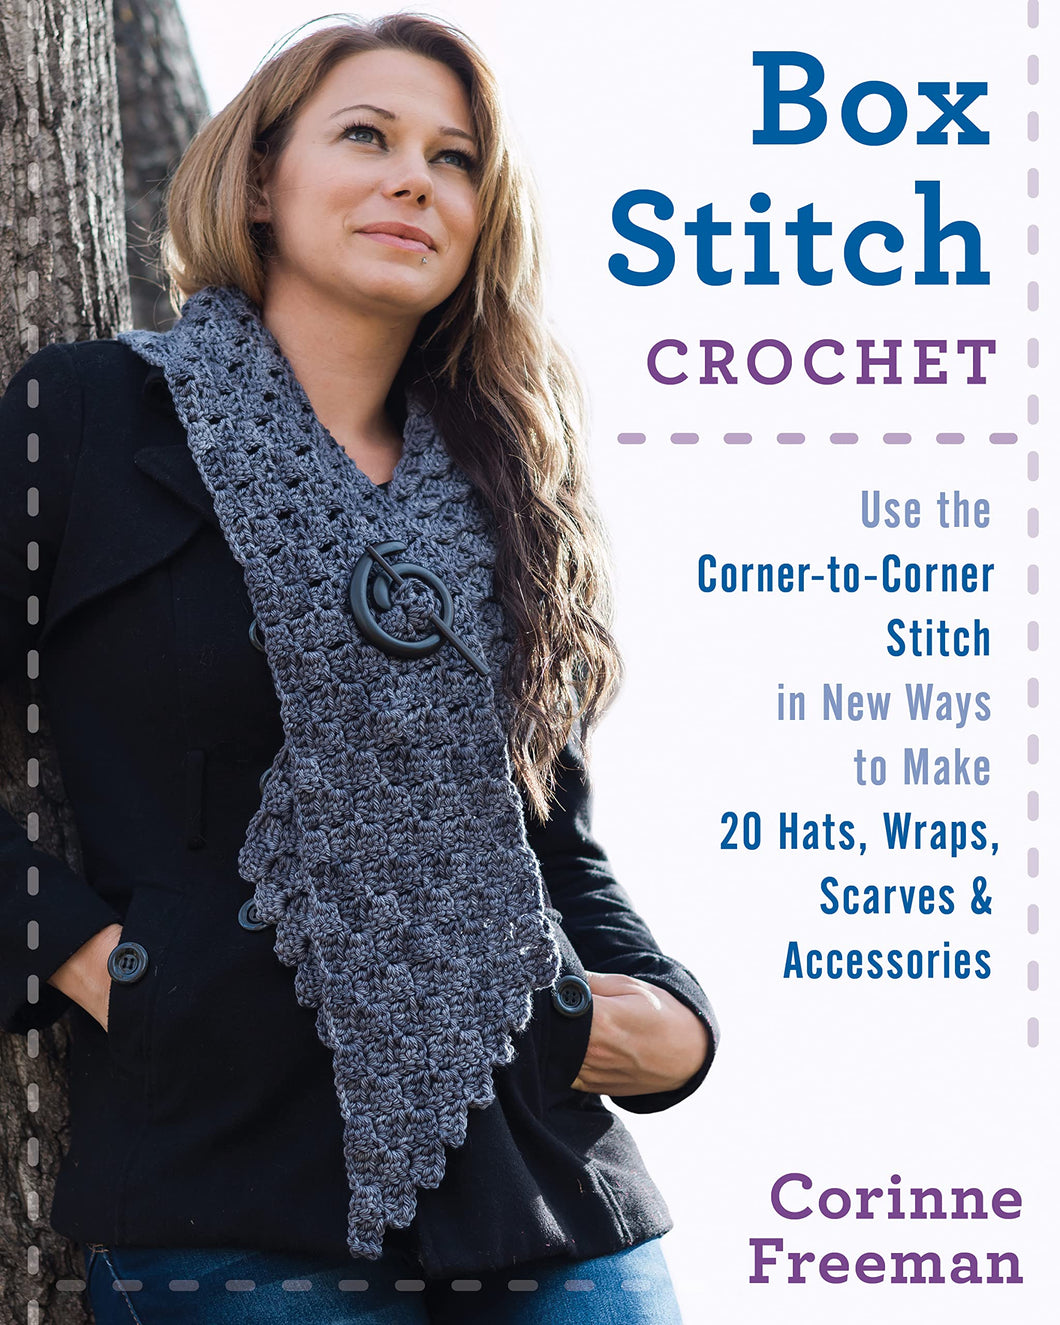 Box Stitch Crochet - 20 Hats, Wraps, Scarves & Accessories